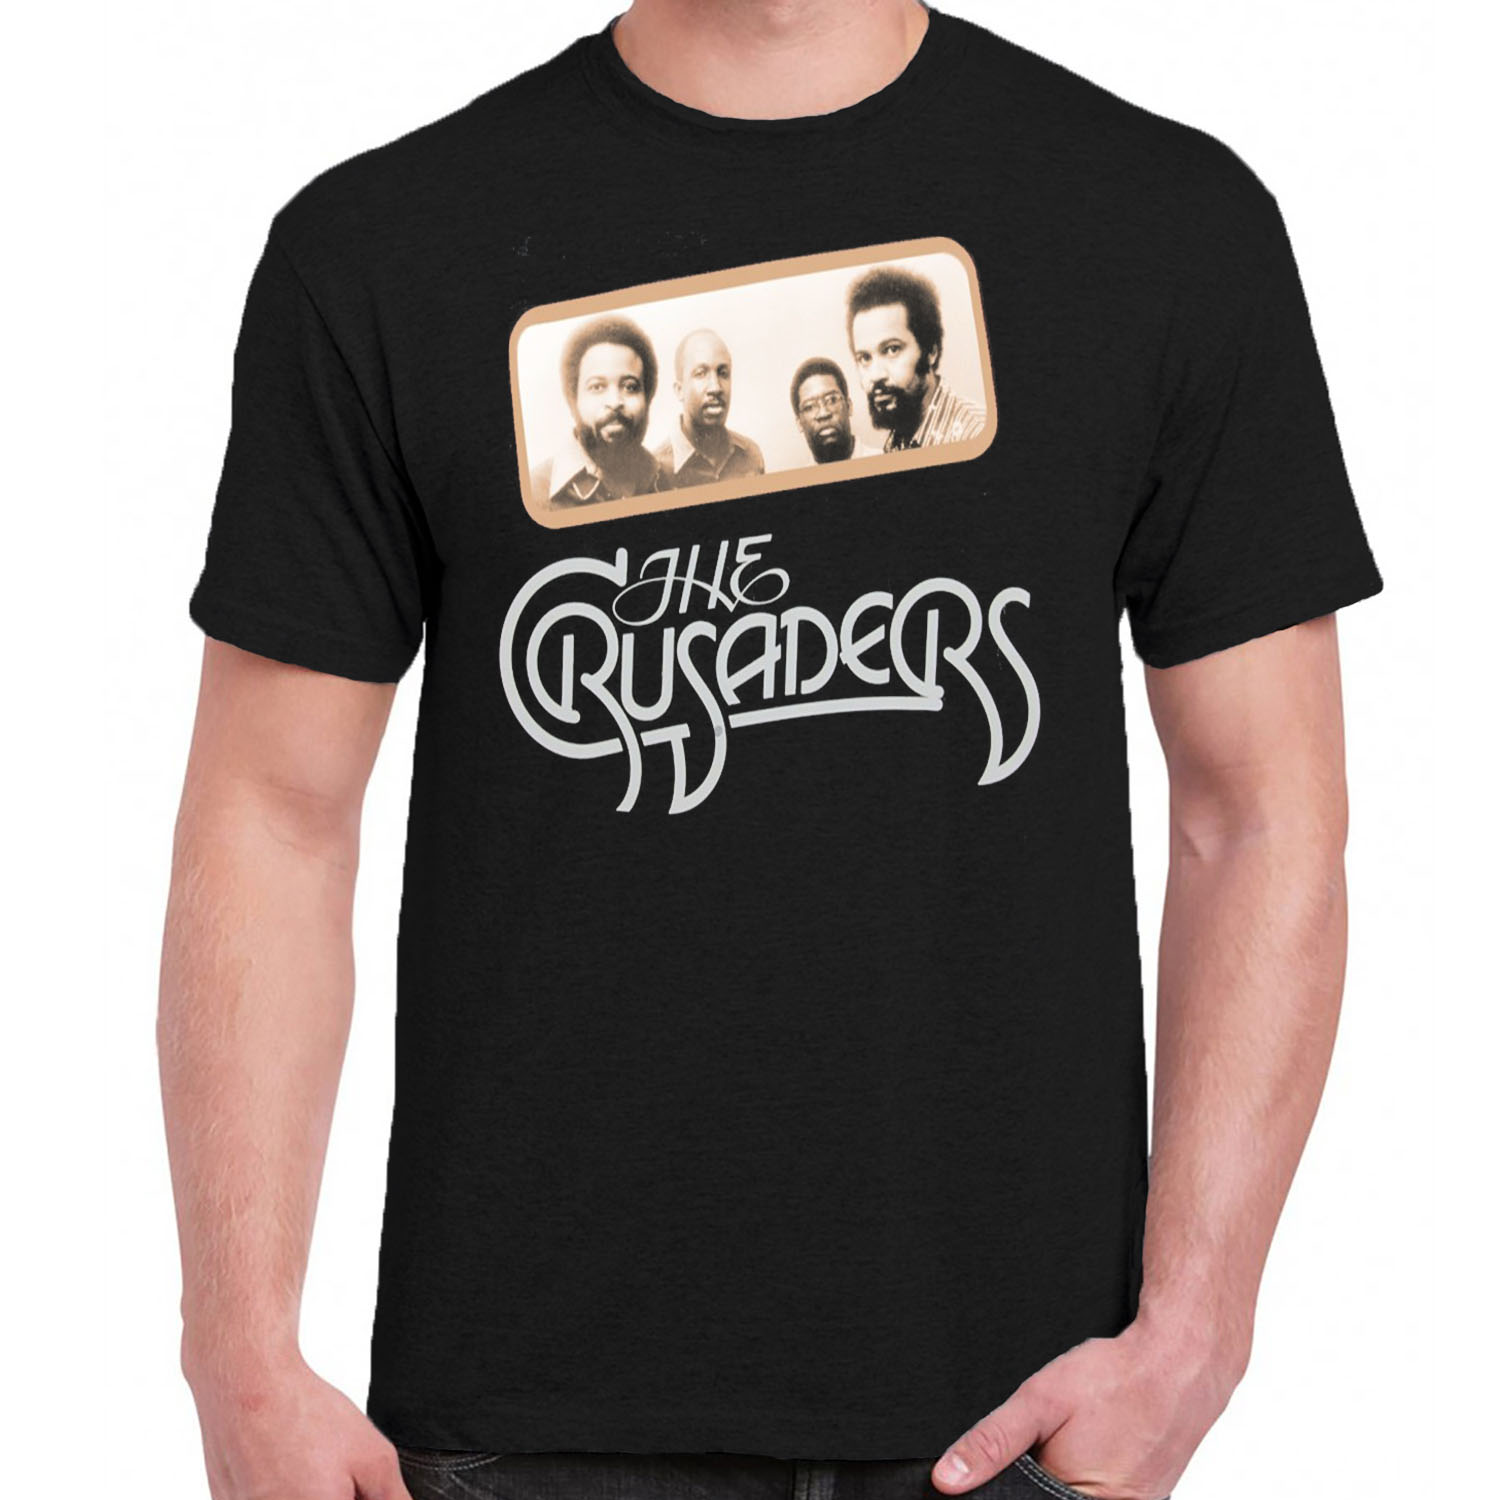 Crusaders t-shirt 70s